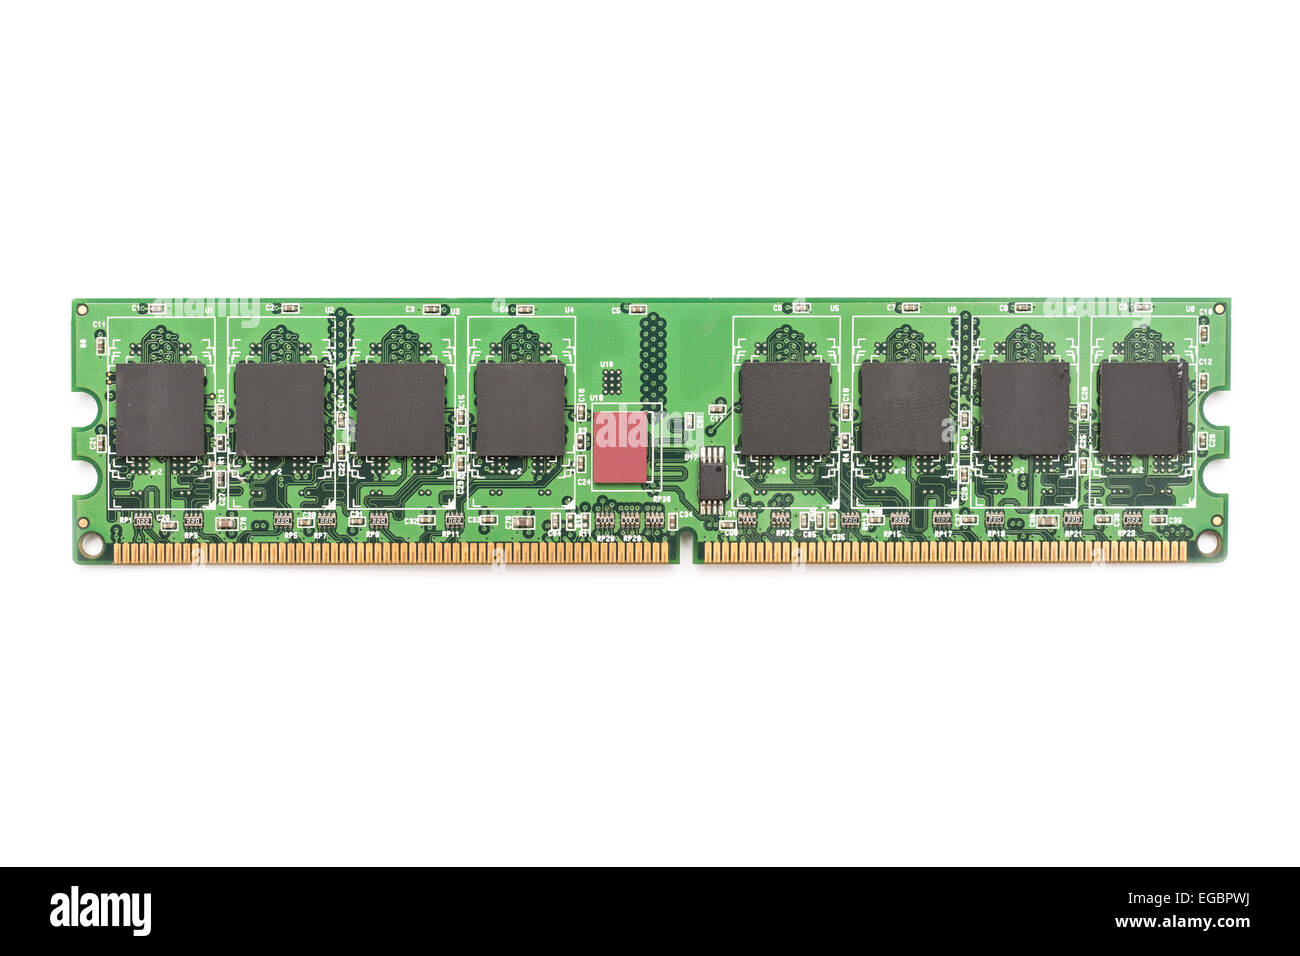 RAM memoria per computer Chip Modules isolato su bianco Foto Stock